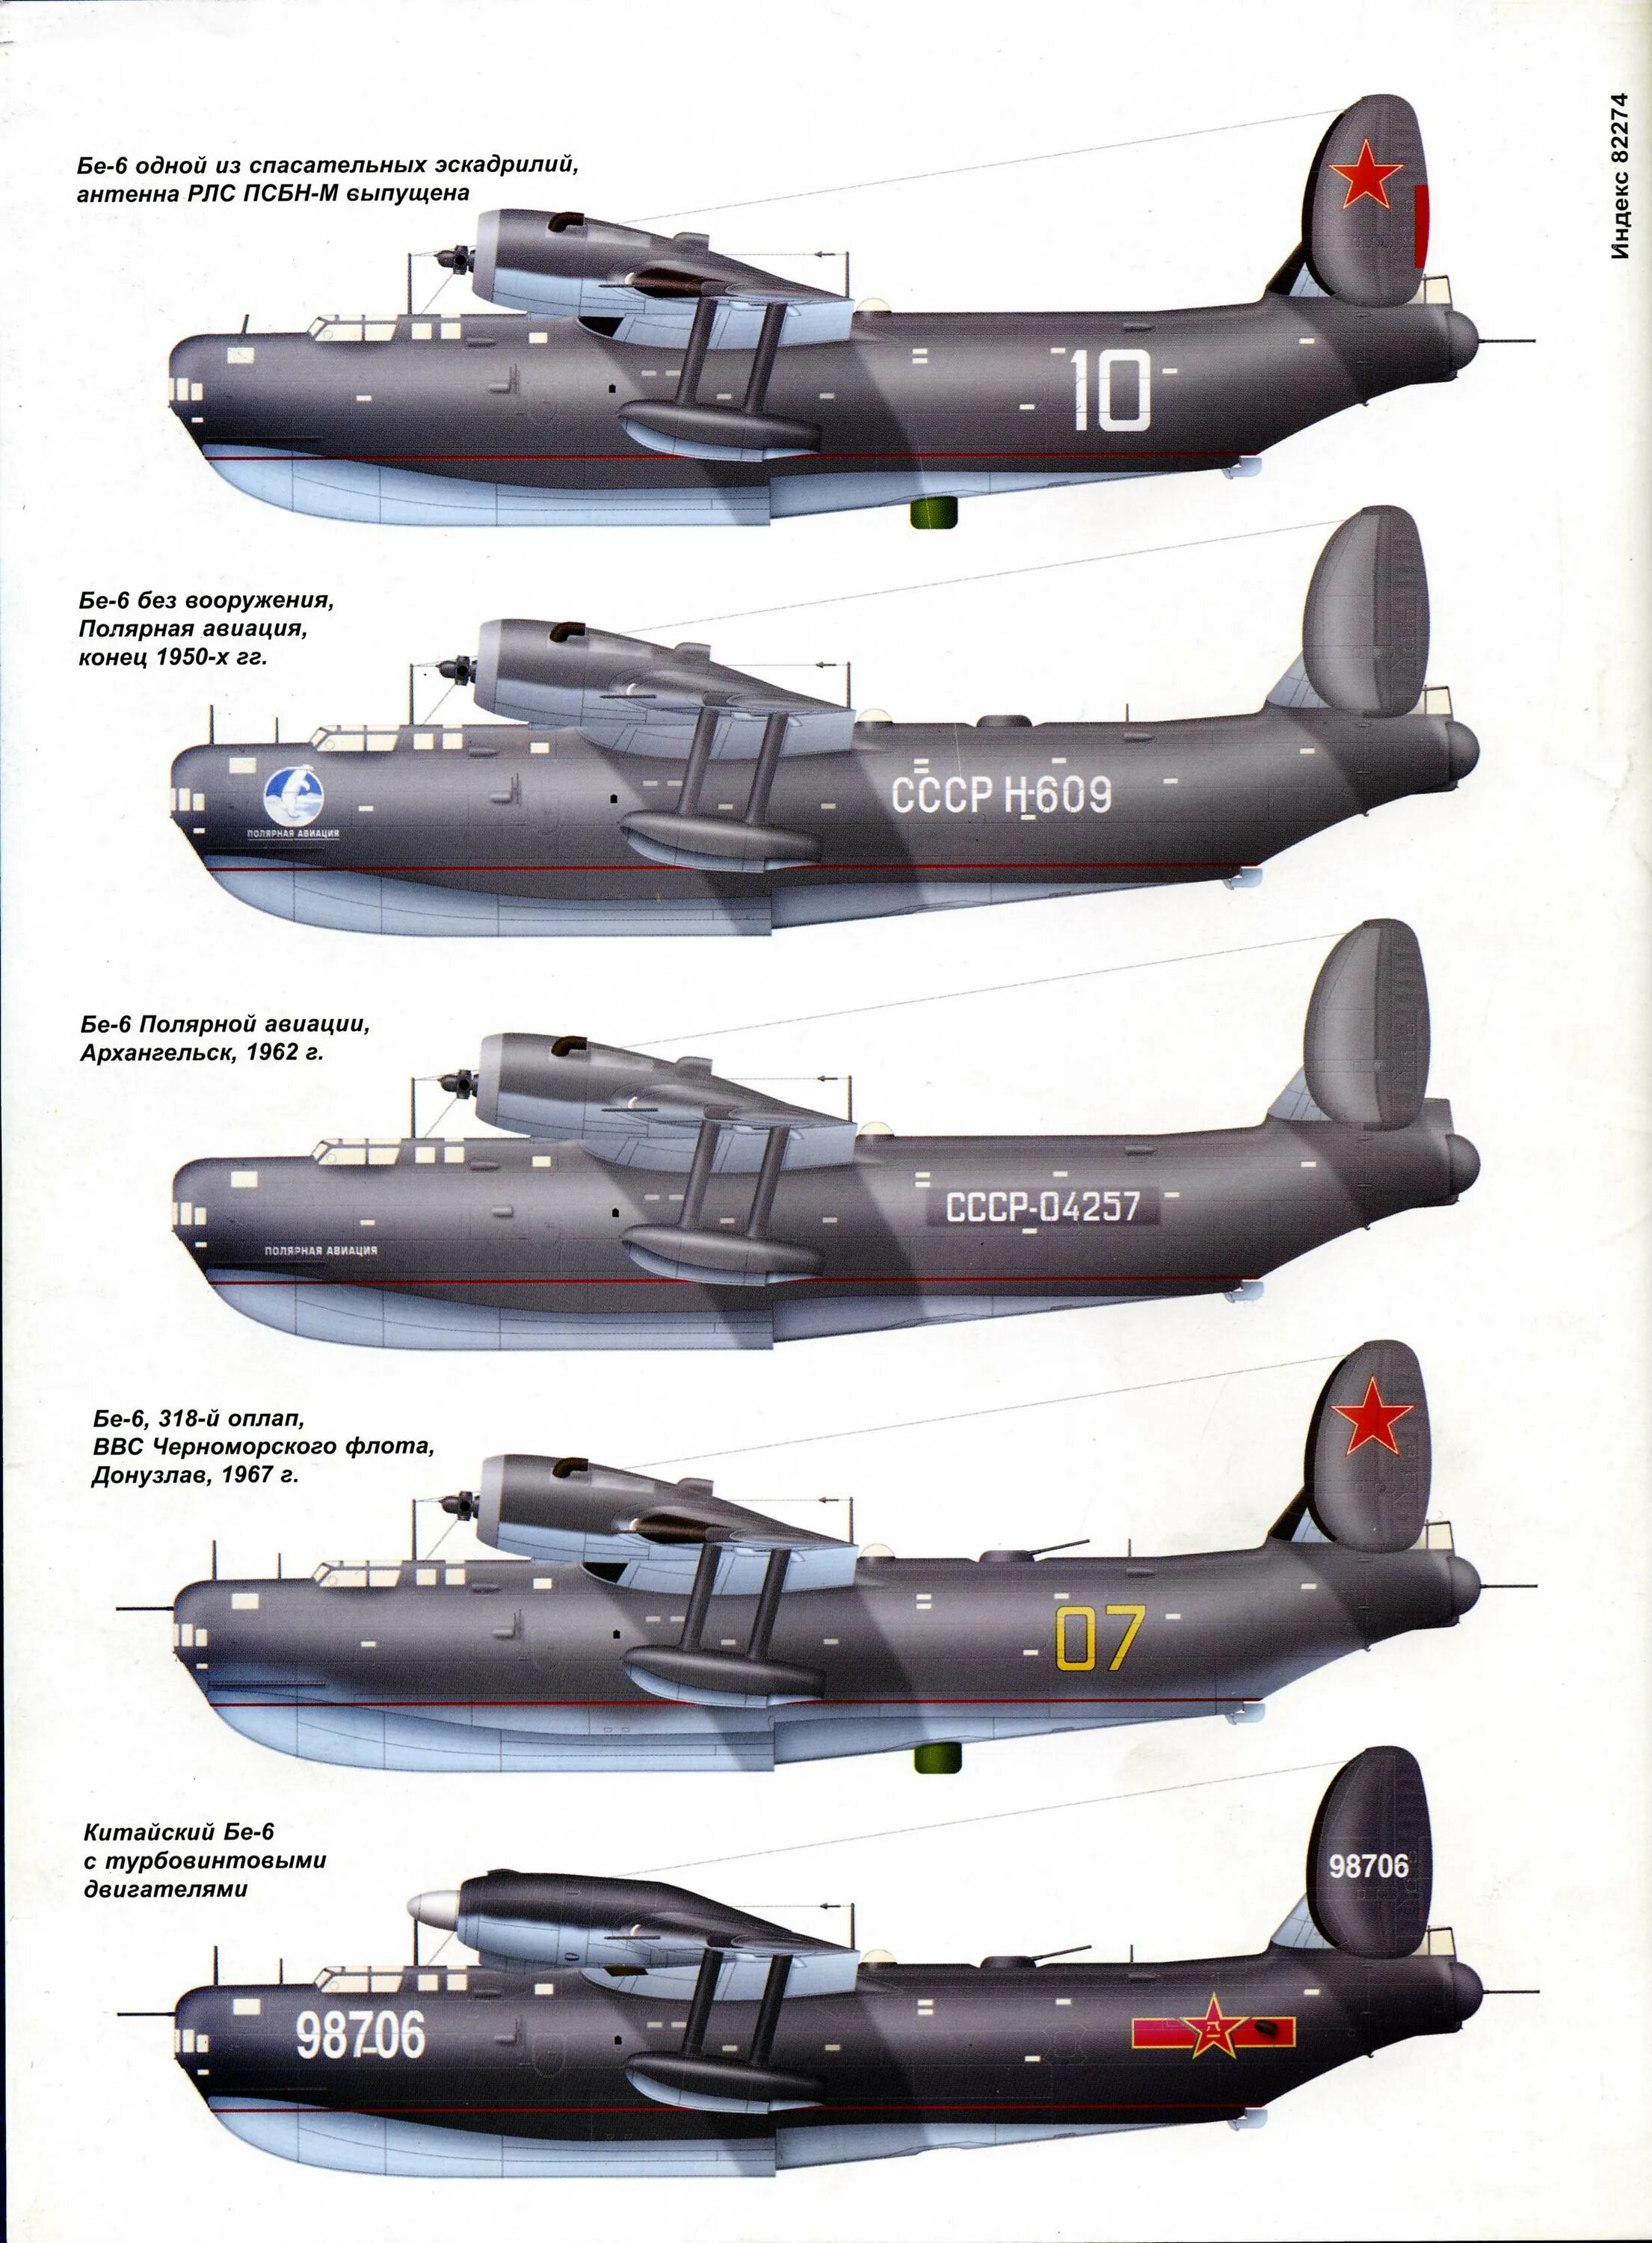 Самолет-амфибия бе-6. Летающая лодка бе-6. Бе-6 в полярной авиации.